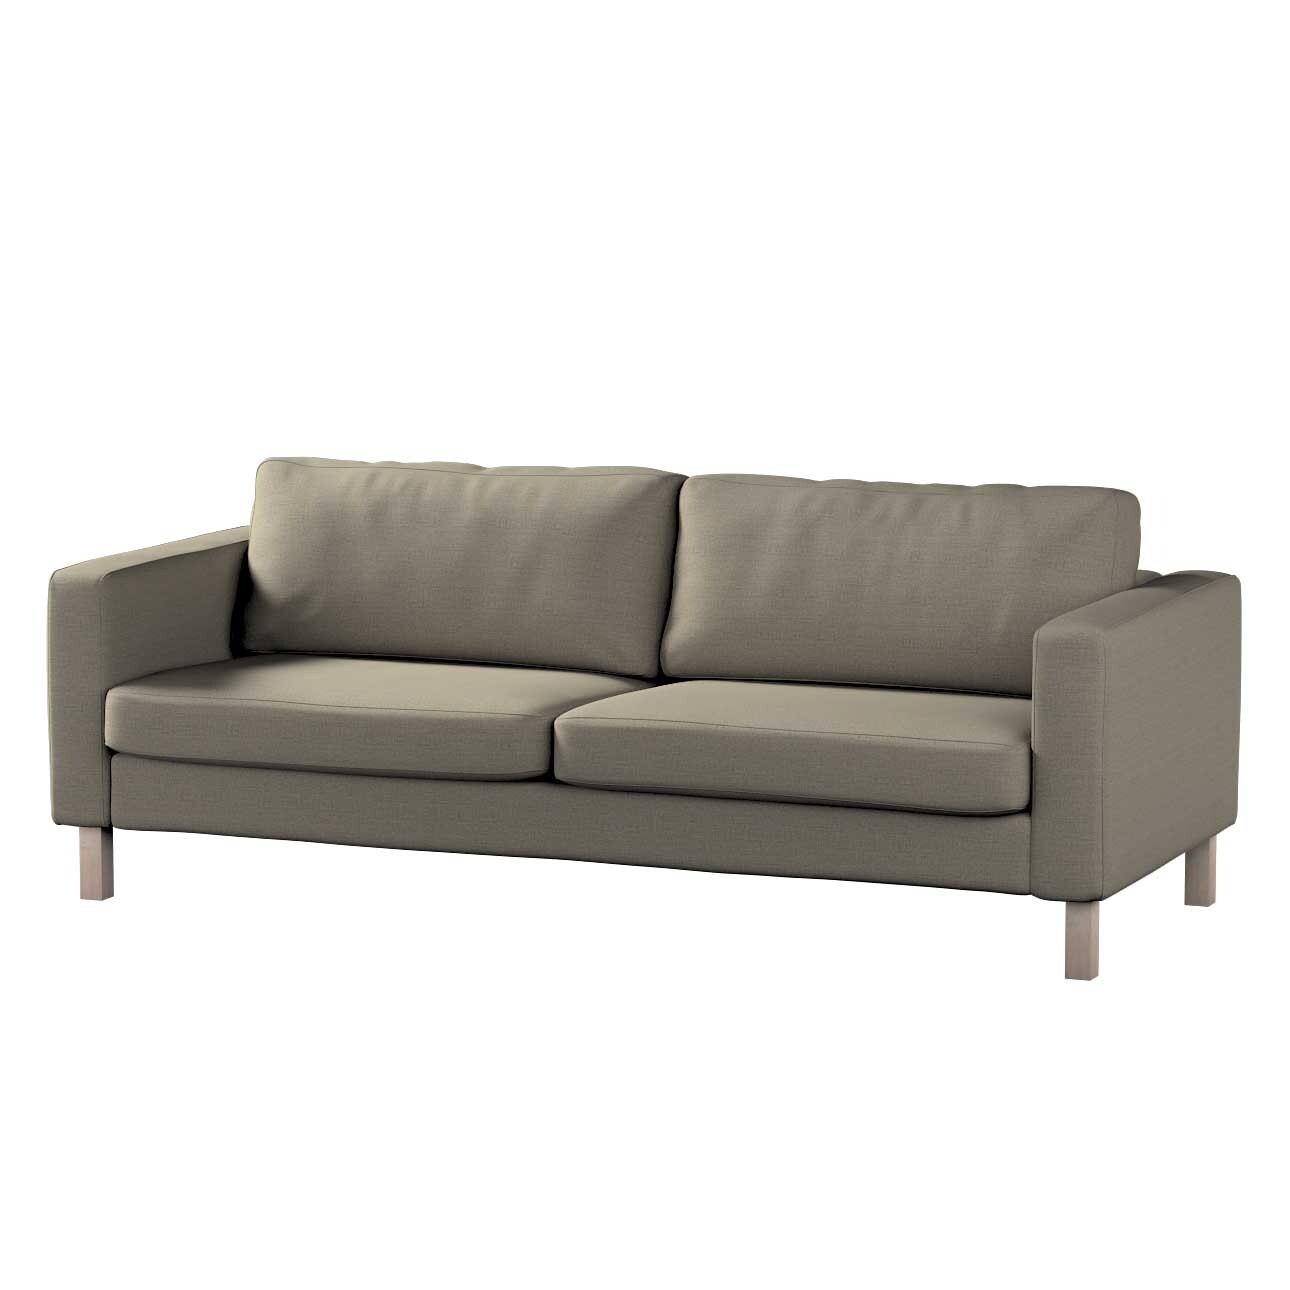 Bezug für Karlstad 3-Sitzer Sofa nicht ausklappbar, kurz, grau-braun, Bezug günstig online kaufen